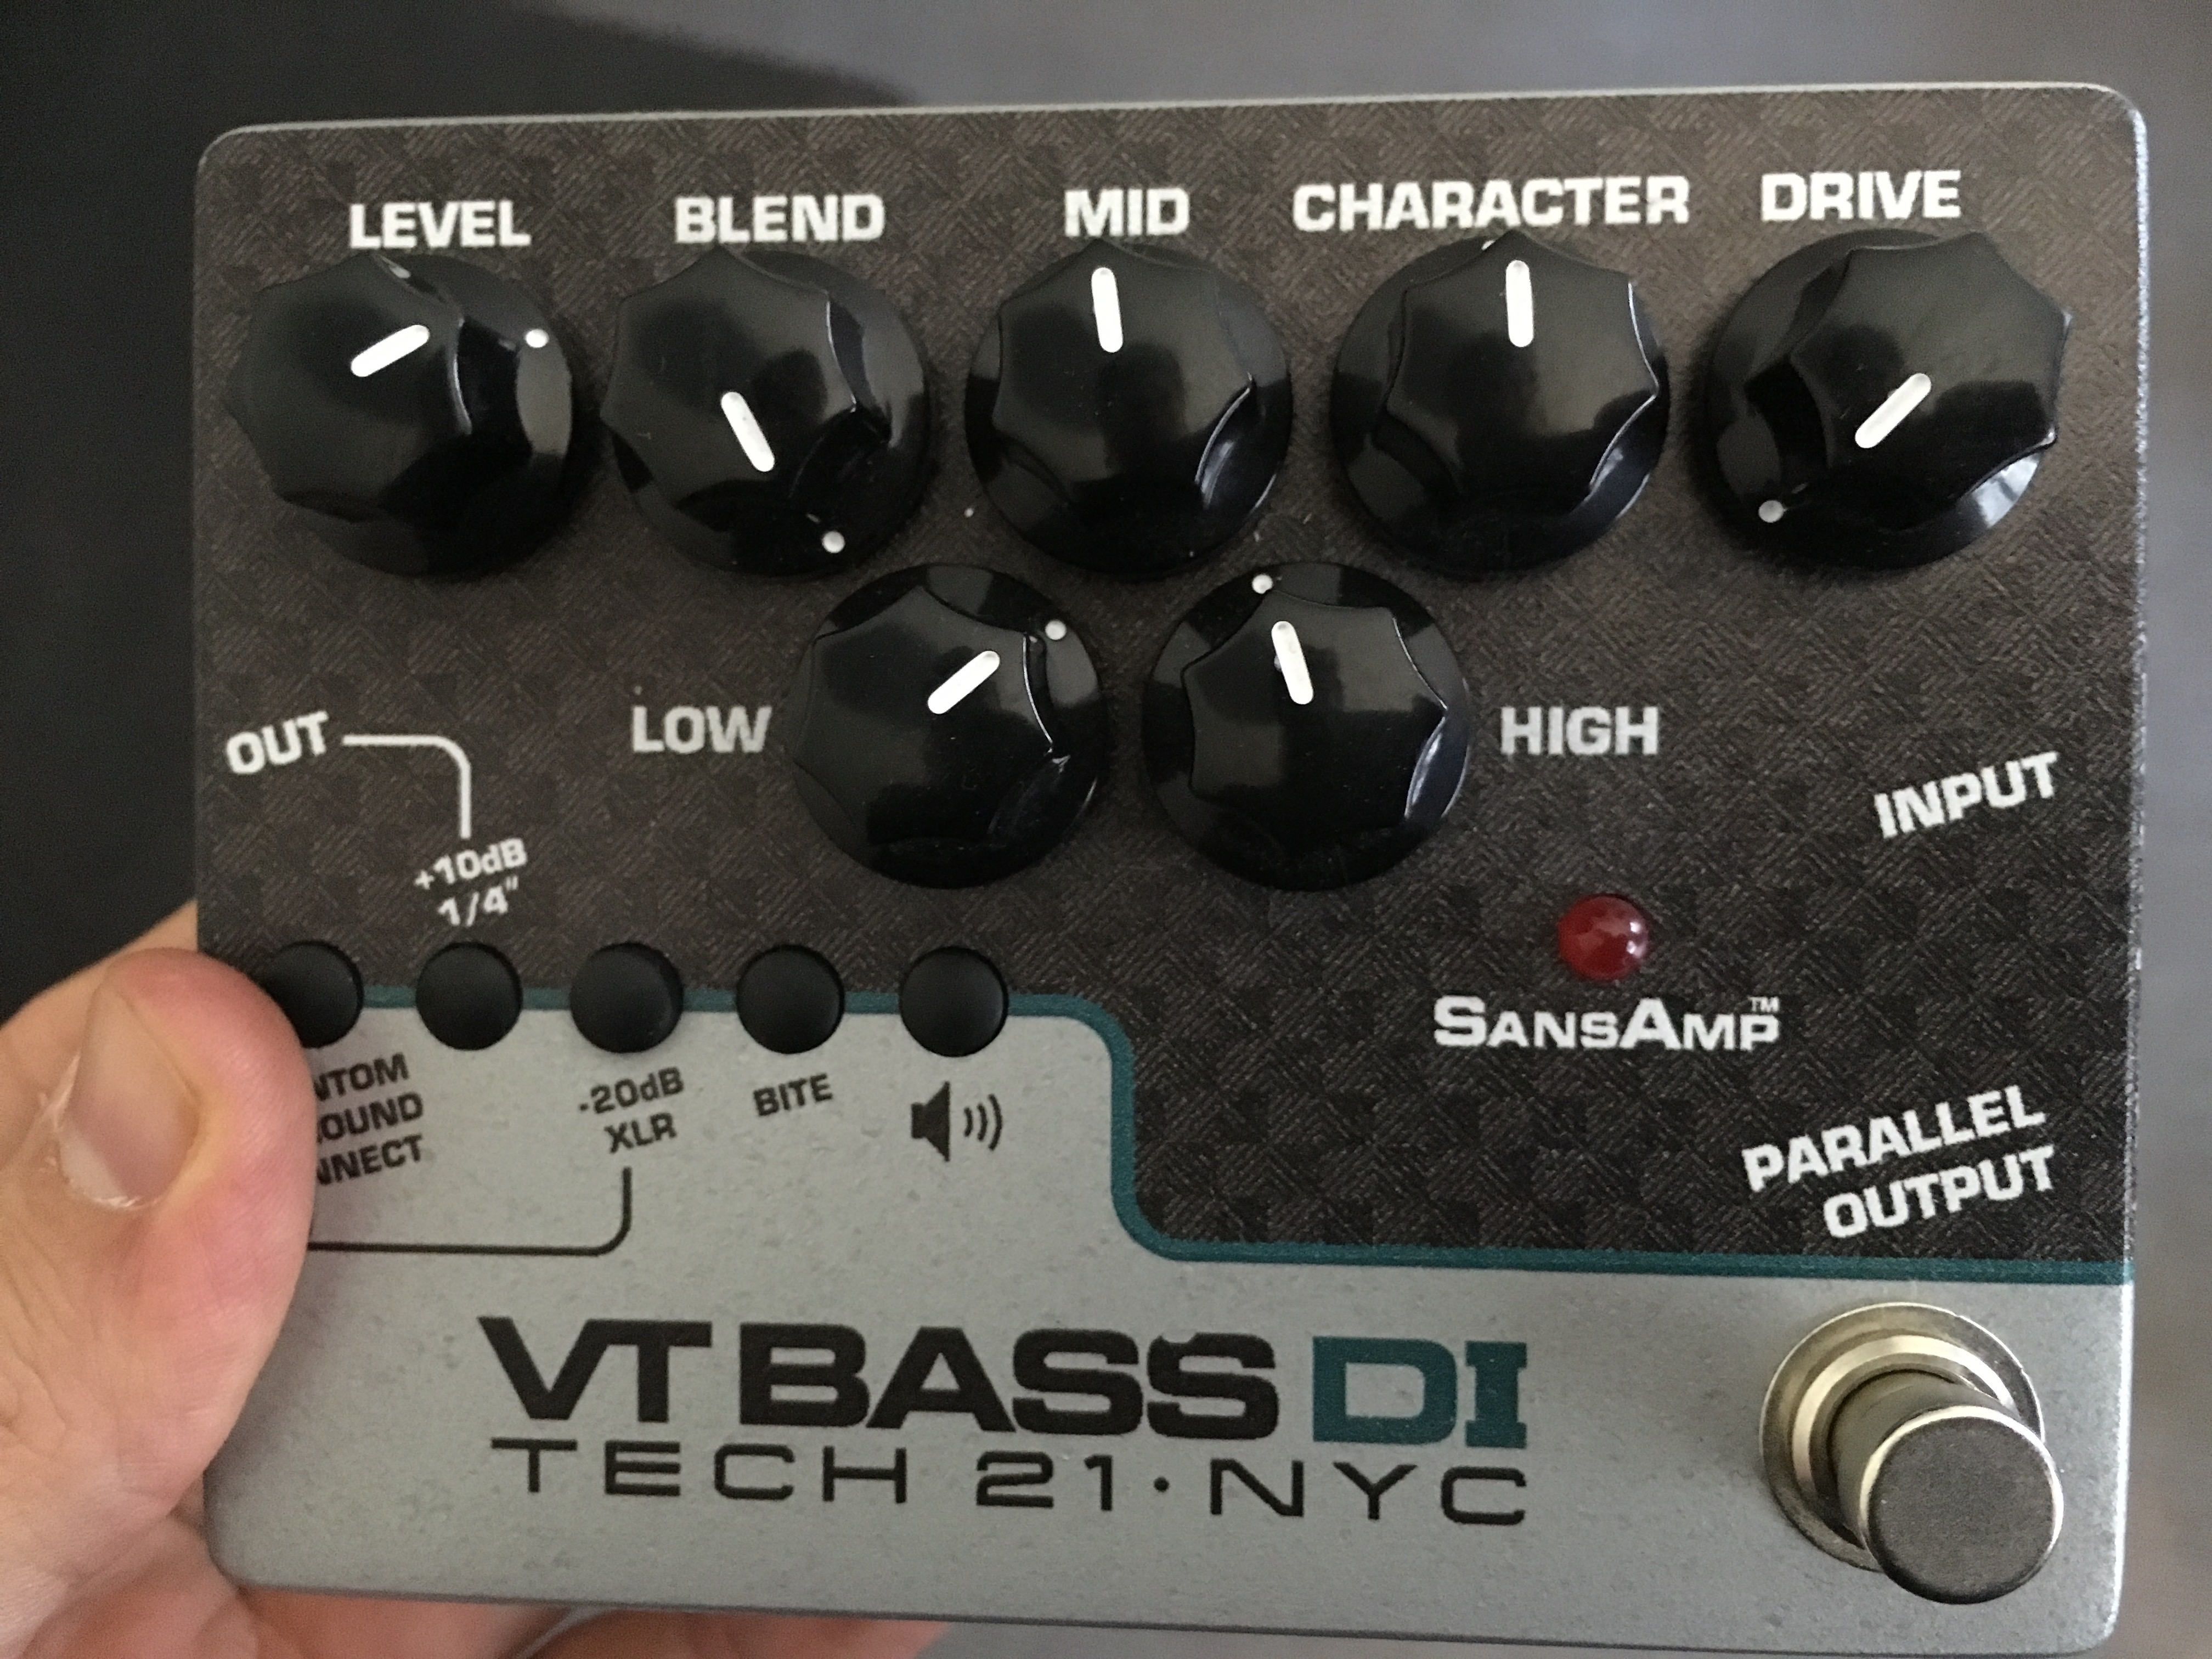 VT BASS DI - Tech 21 VT Bass DI - Audiofanzine